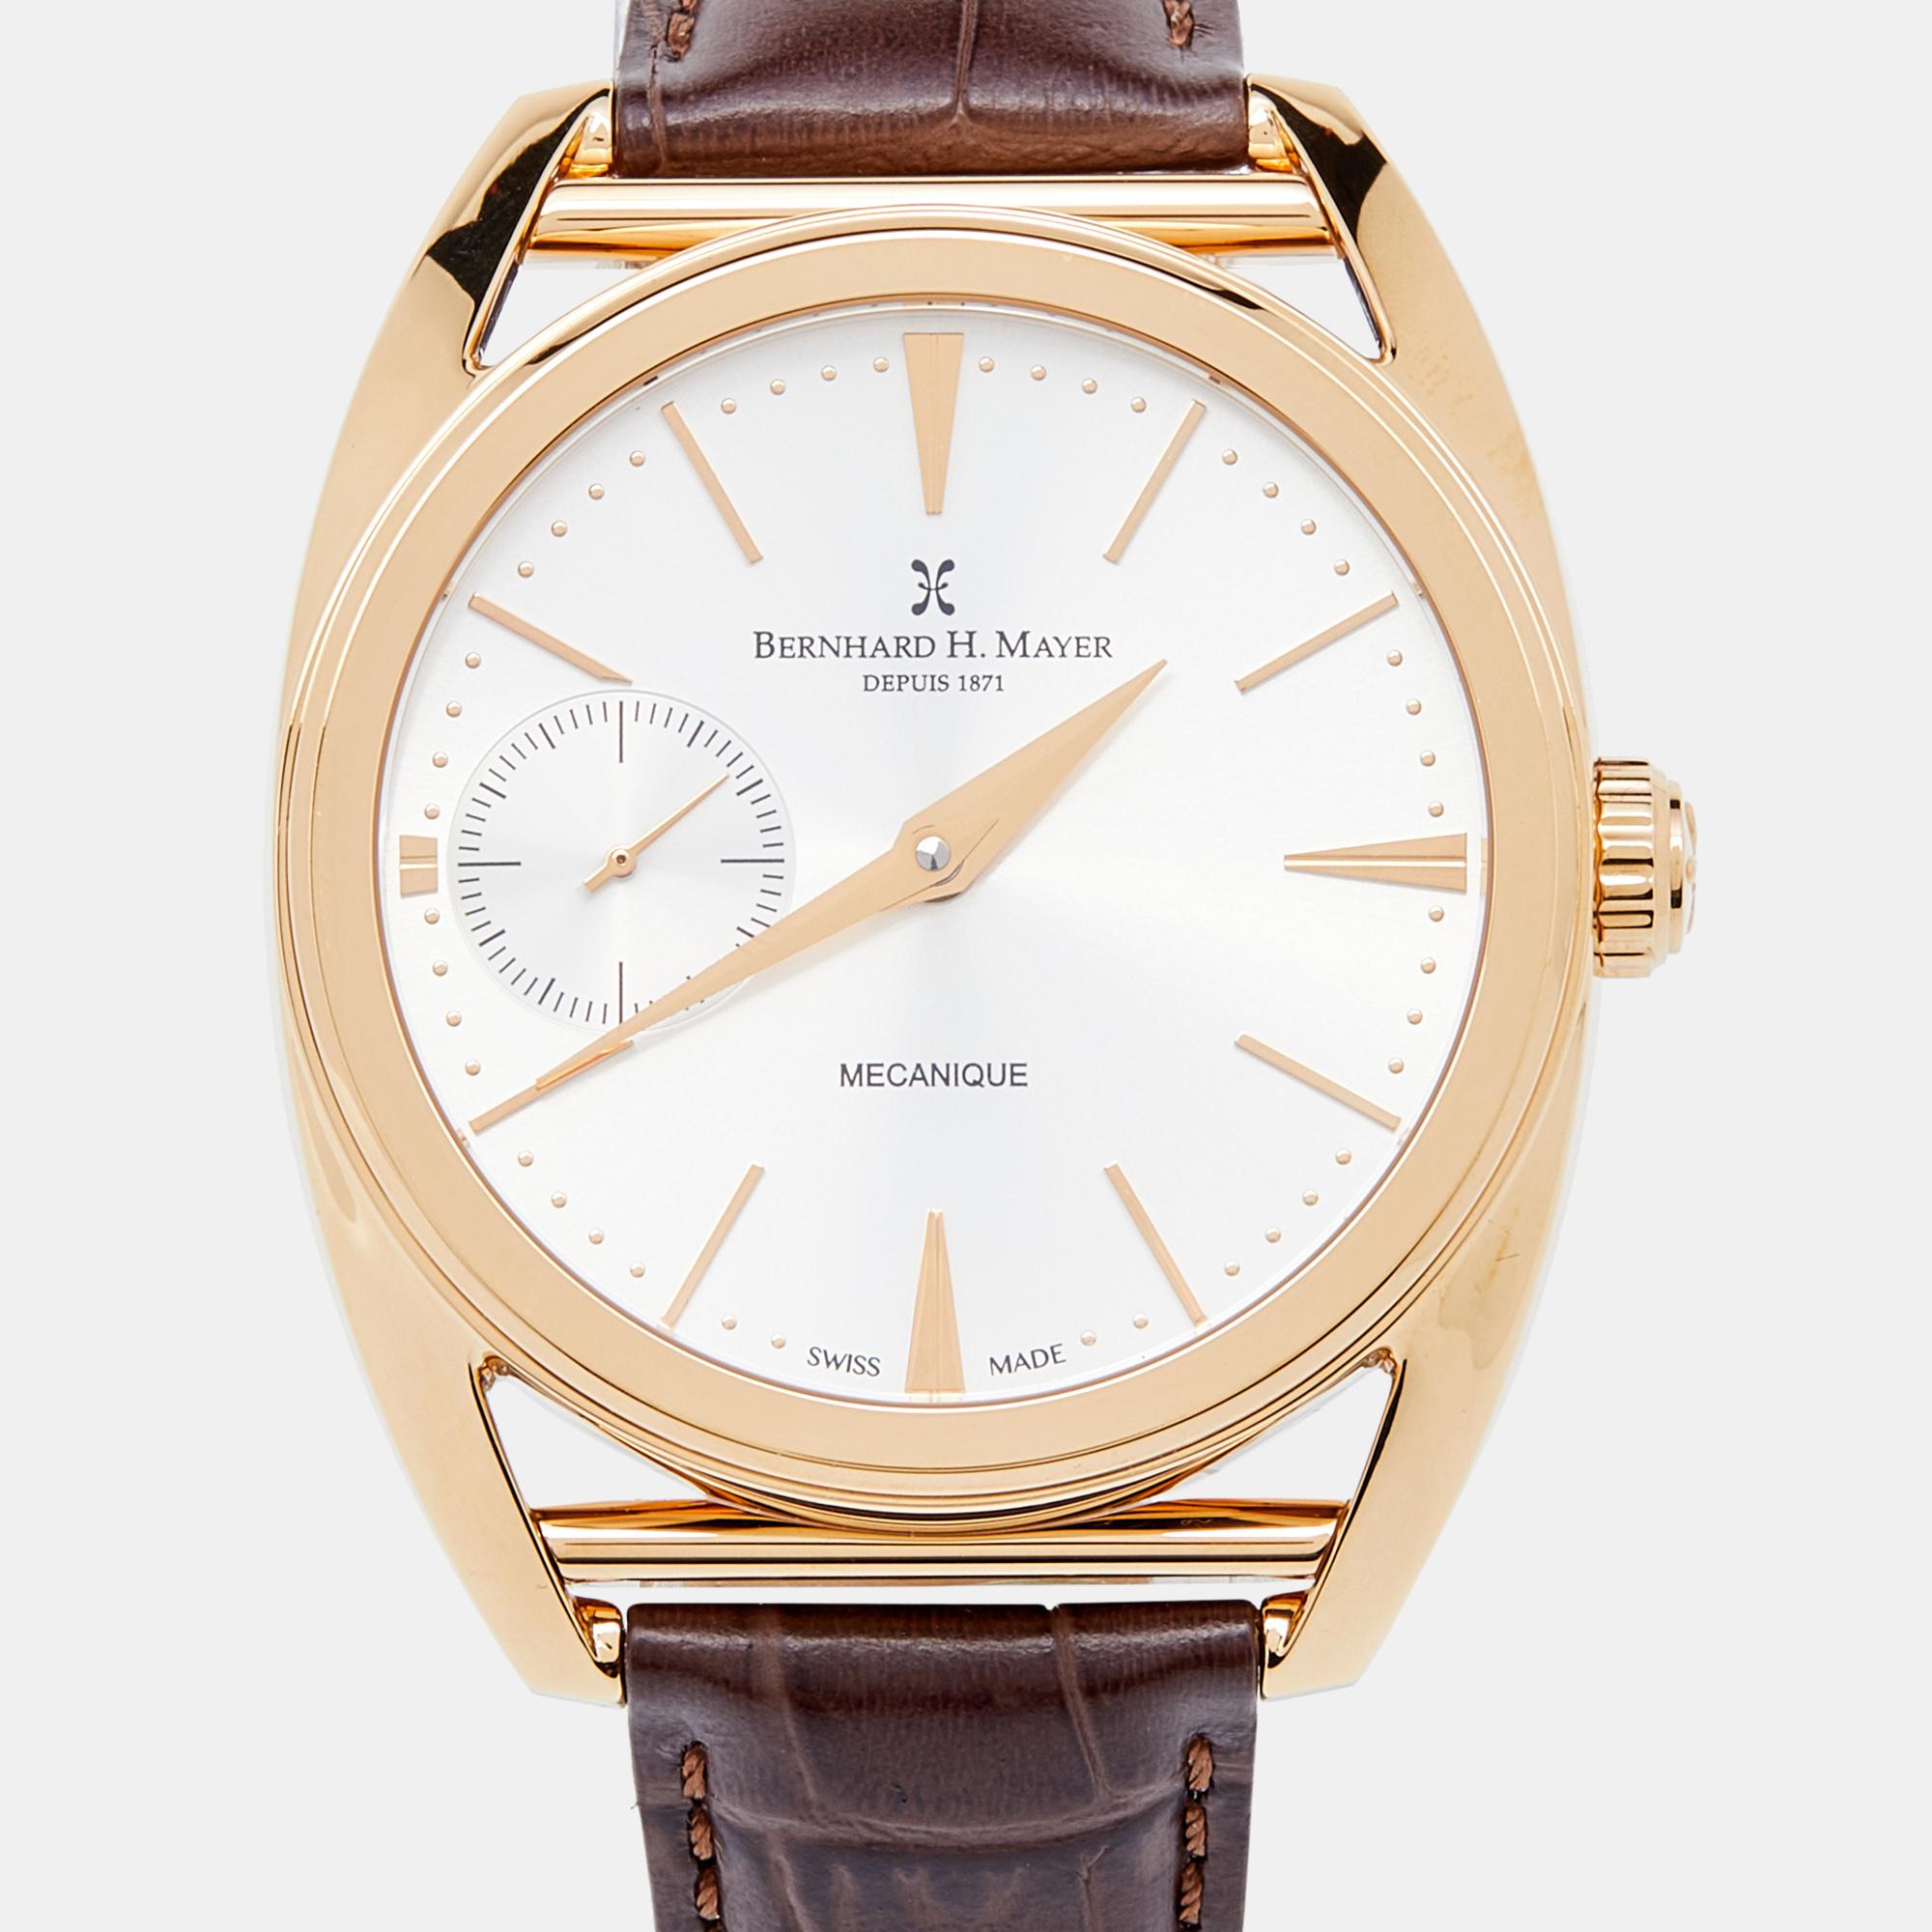 bernhard h mayer watches depuis 1871 price